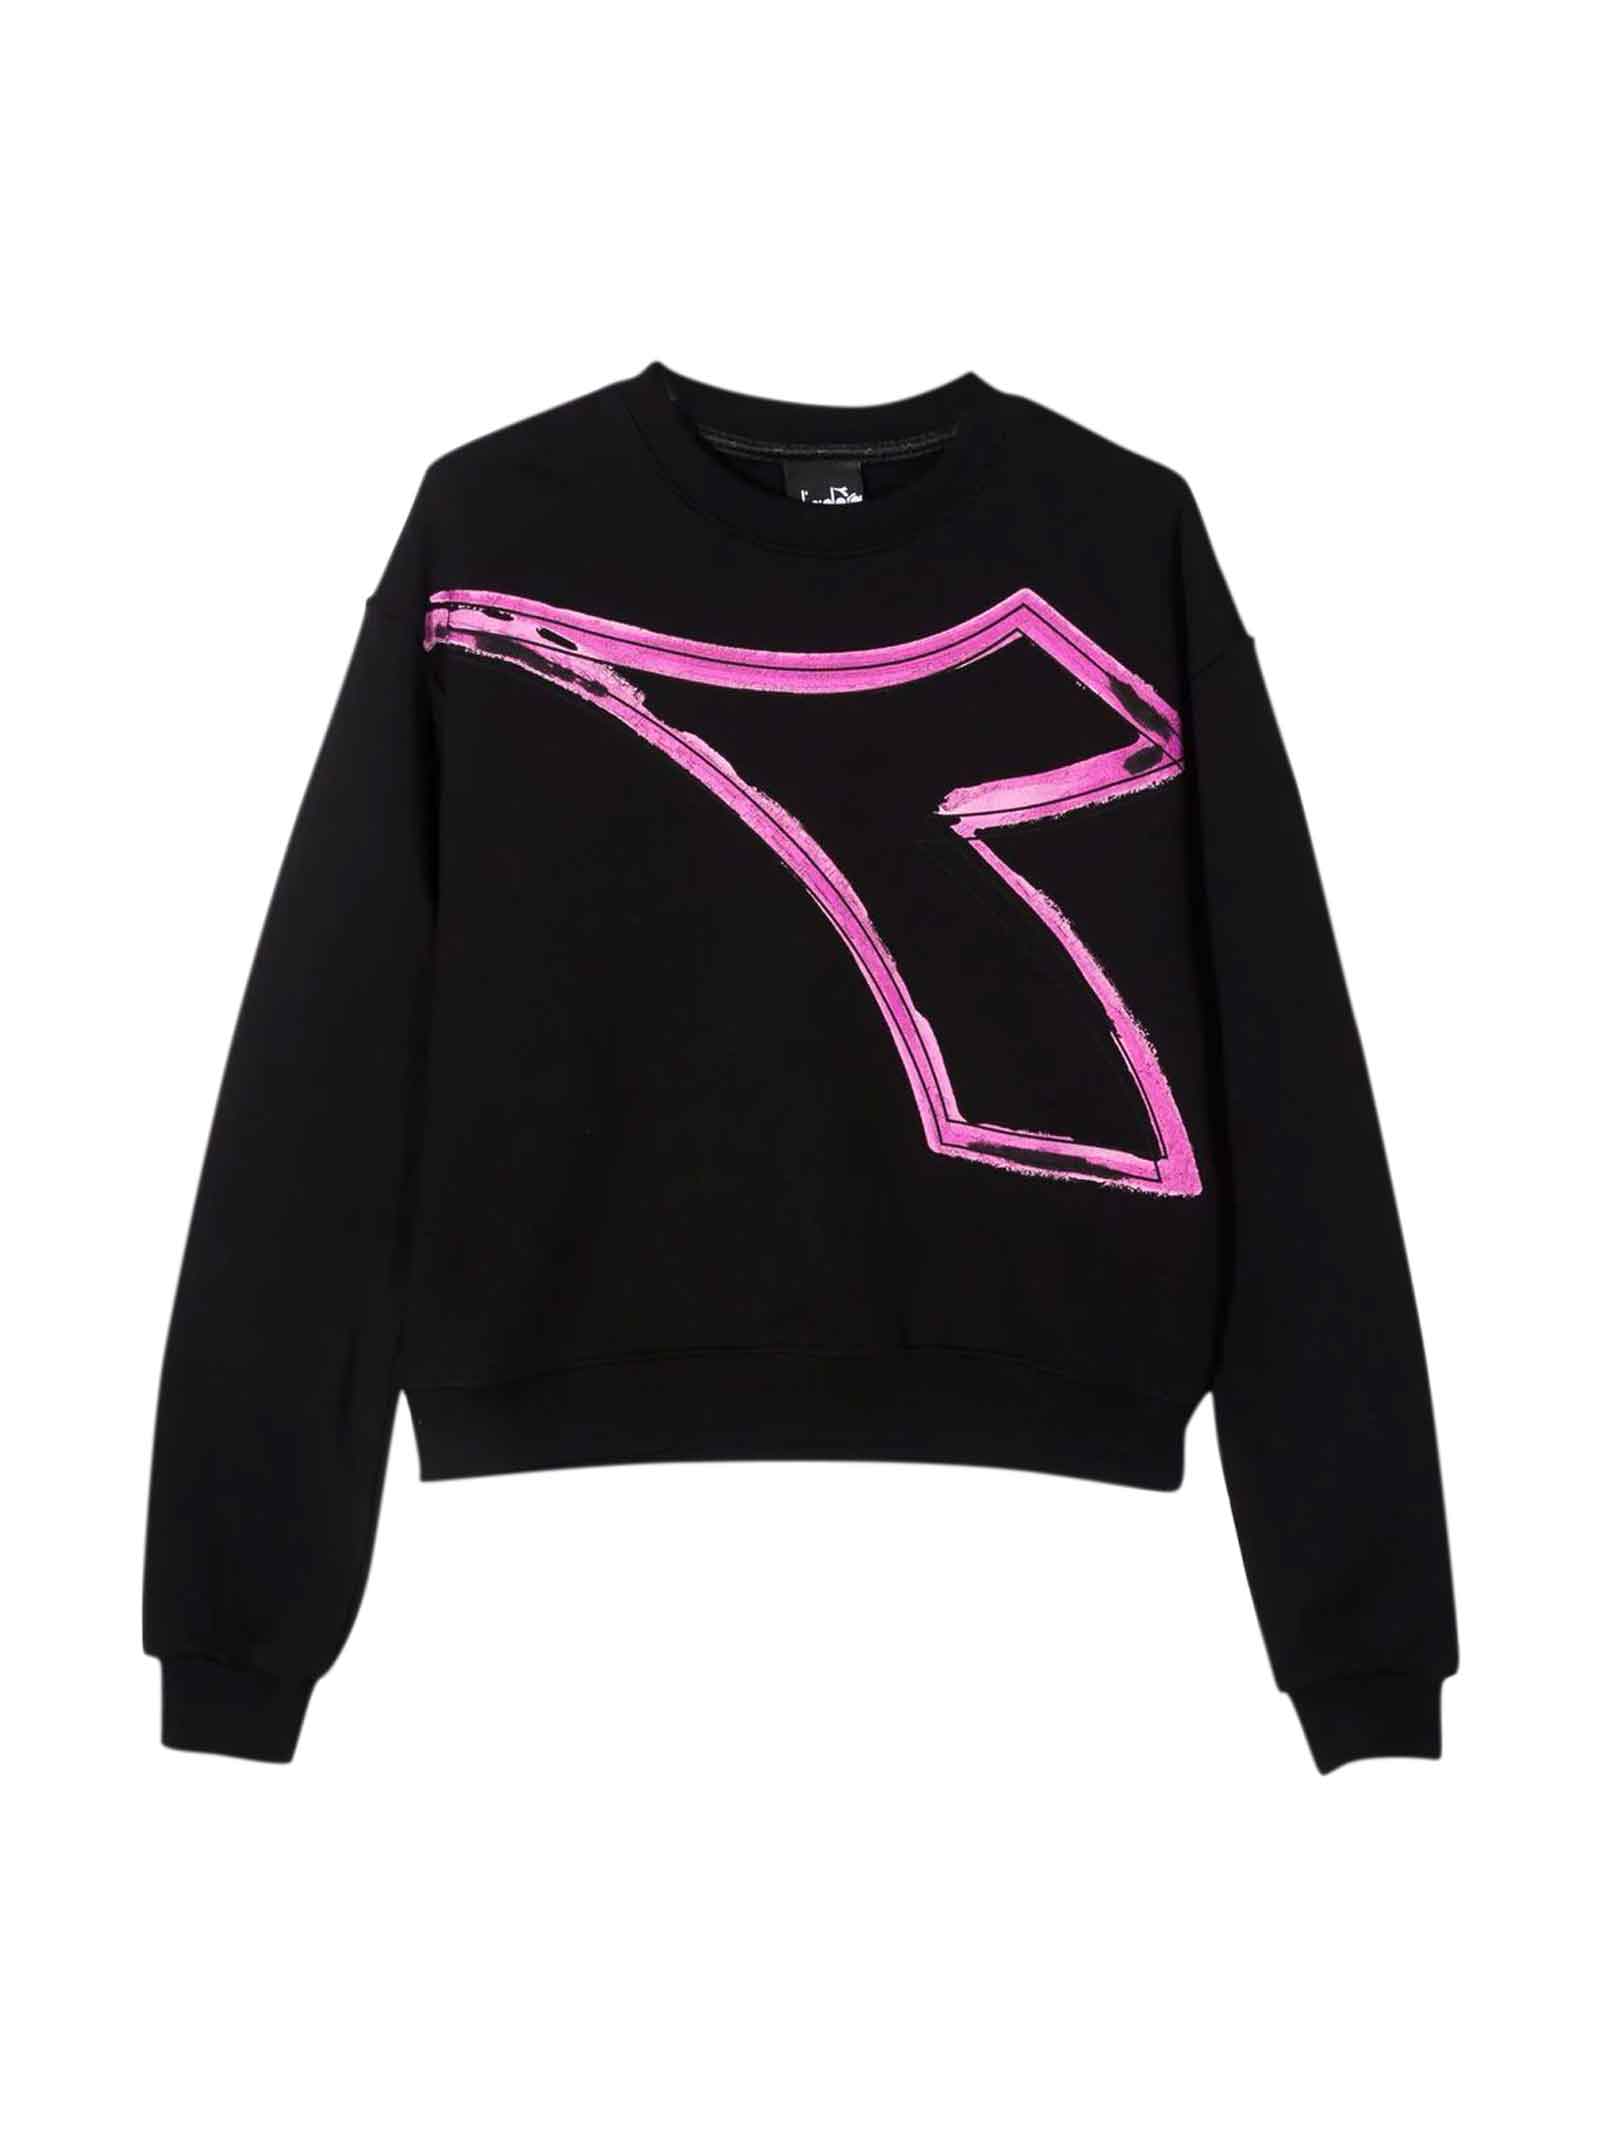 Diadora Black Teen Sweatshirt